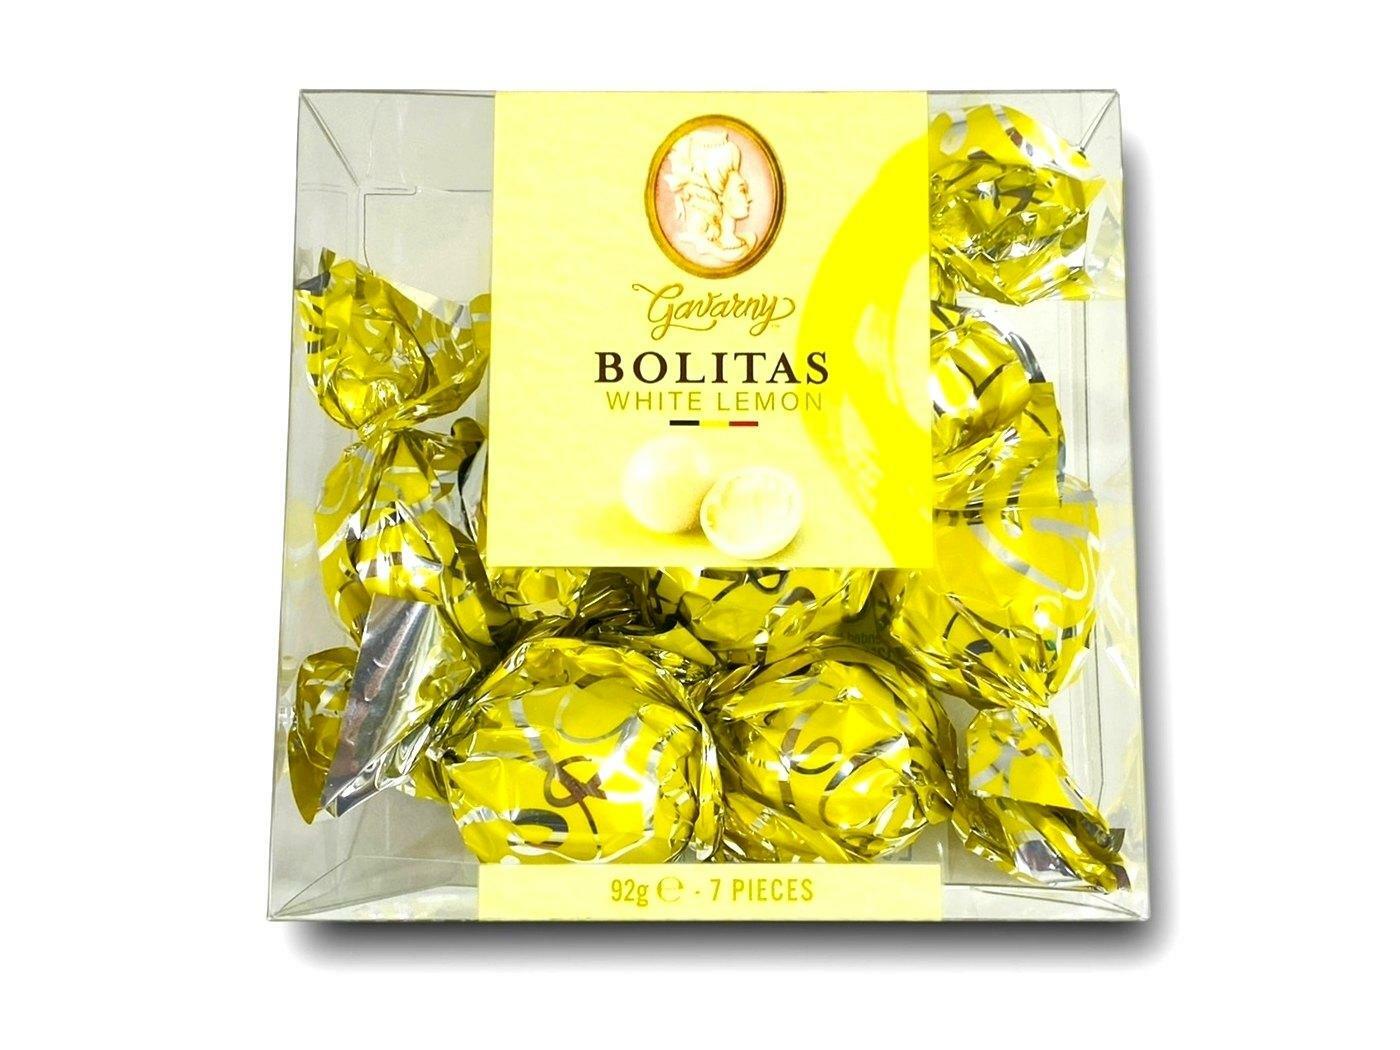 Gavarny Bolitas White Lemon Chocolate.